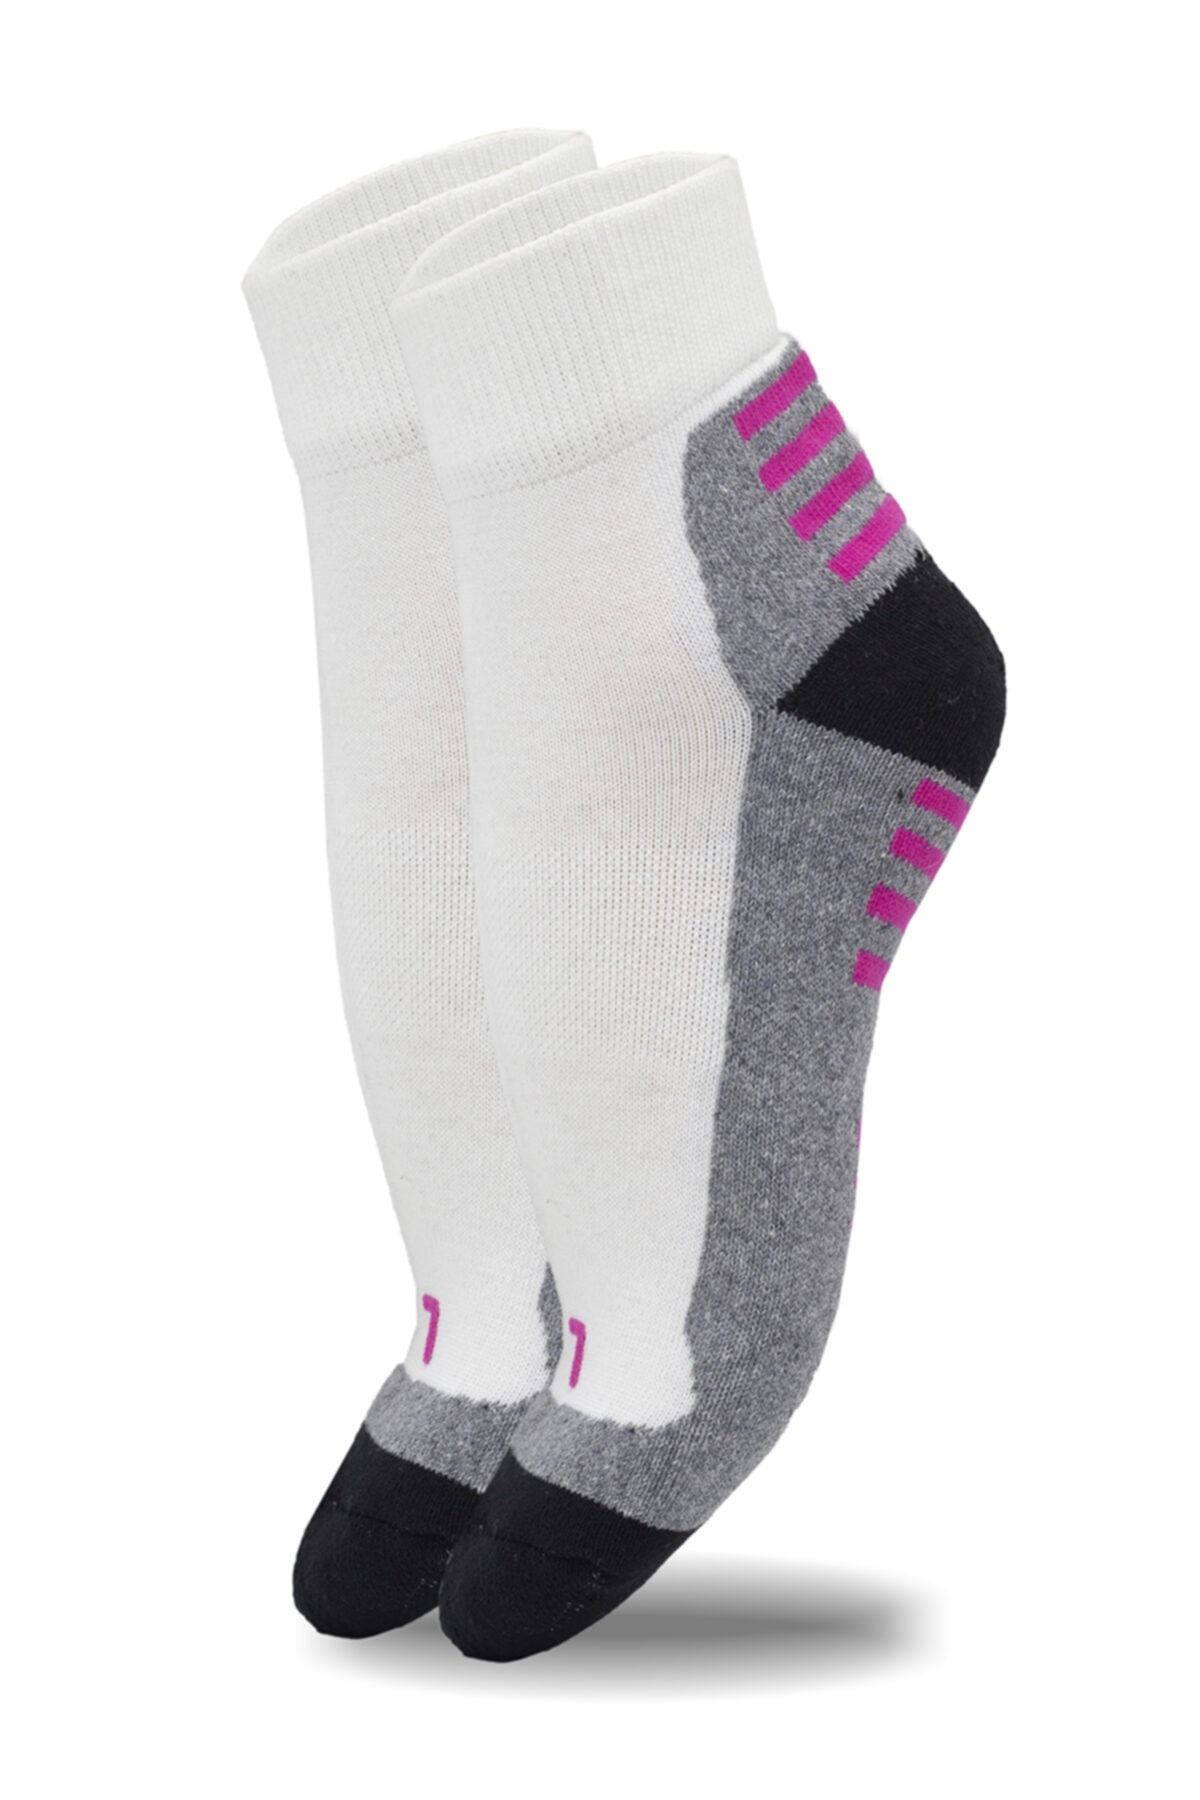 topsocks Kadın  Spor Çorabı 3 Çift